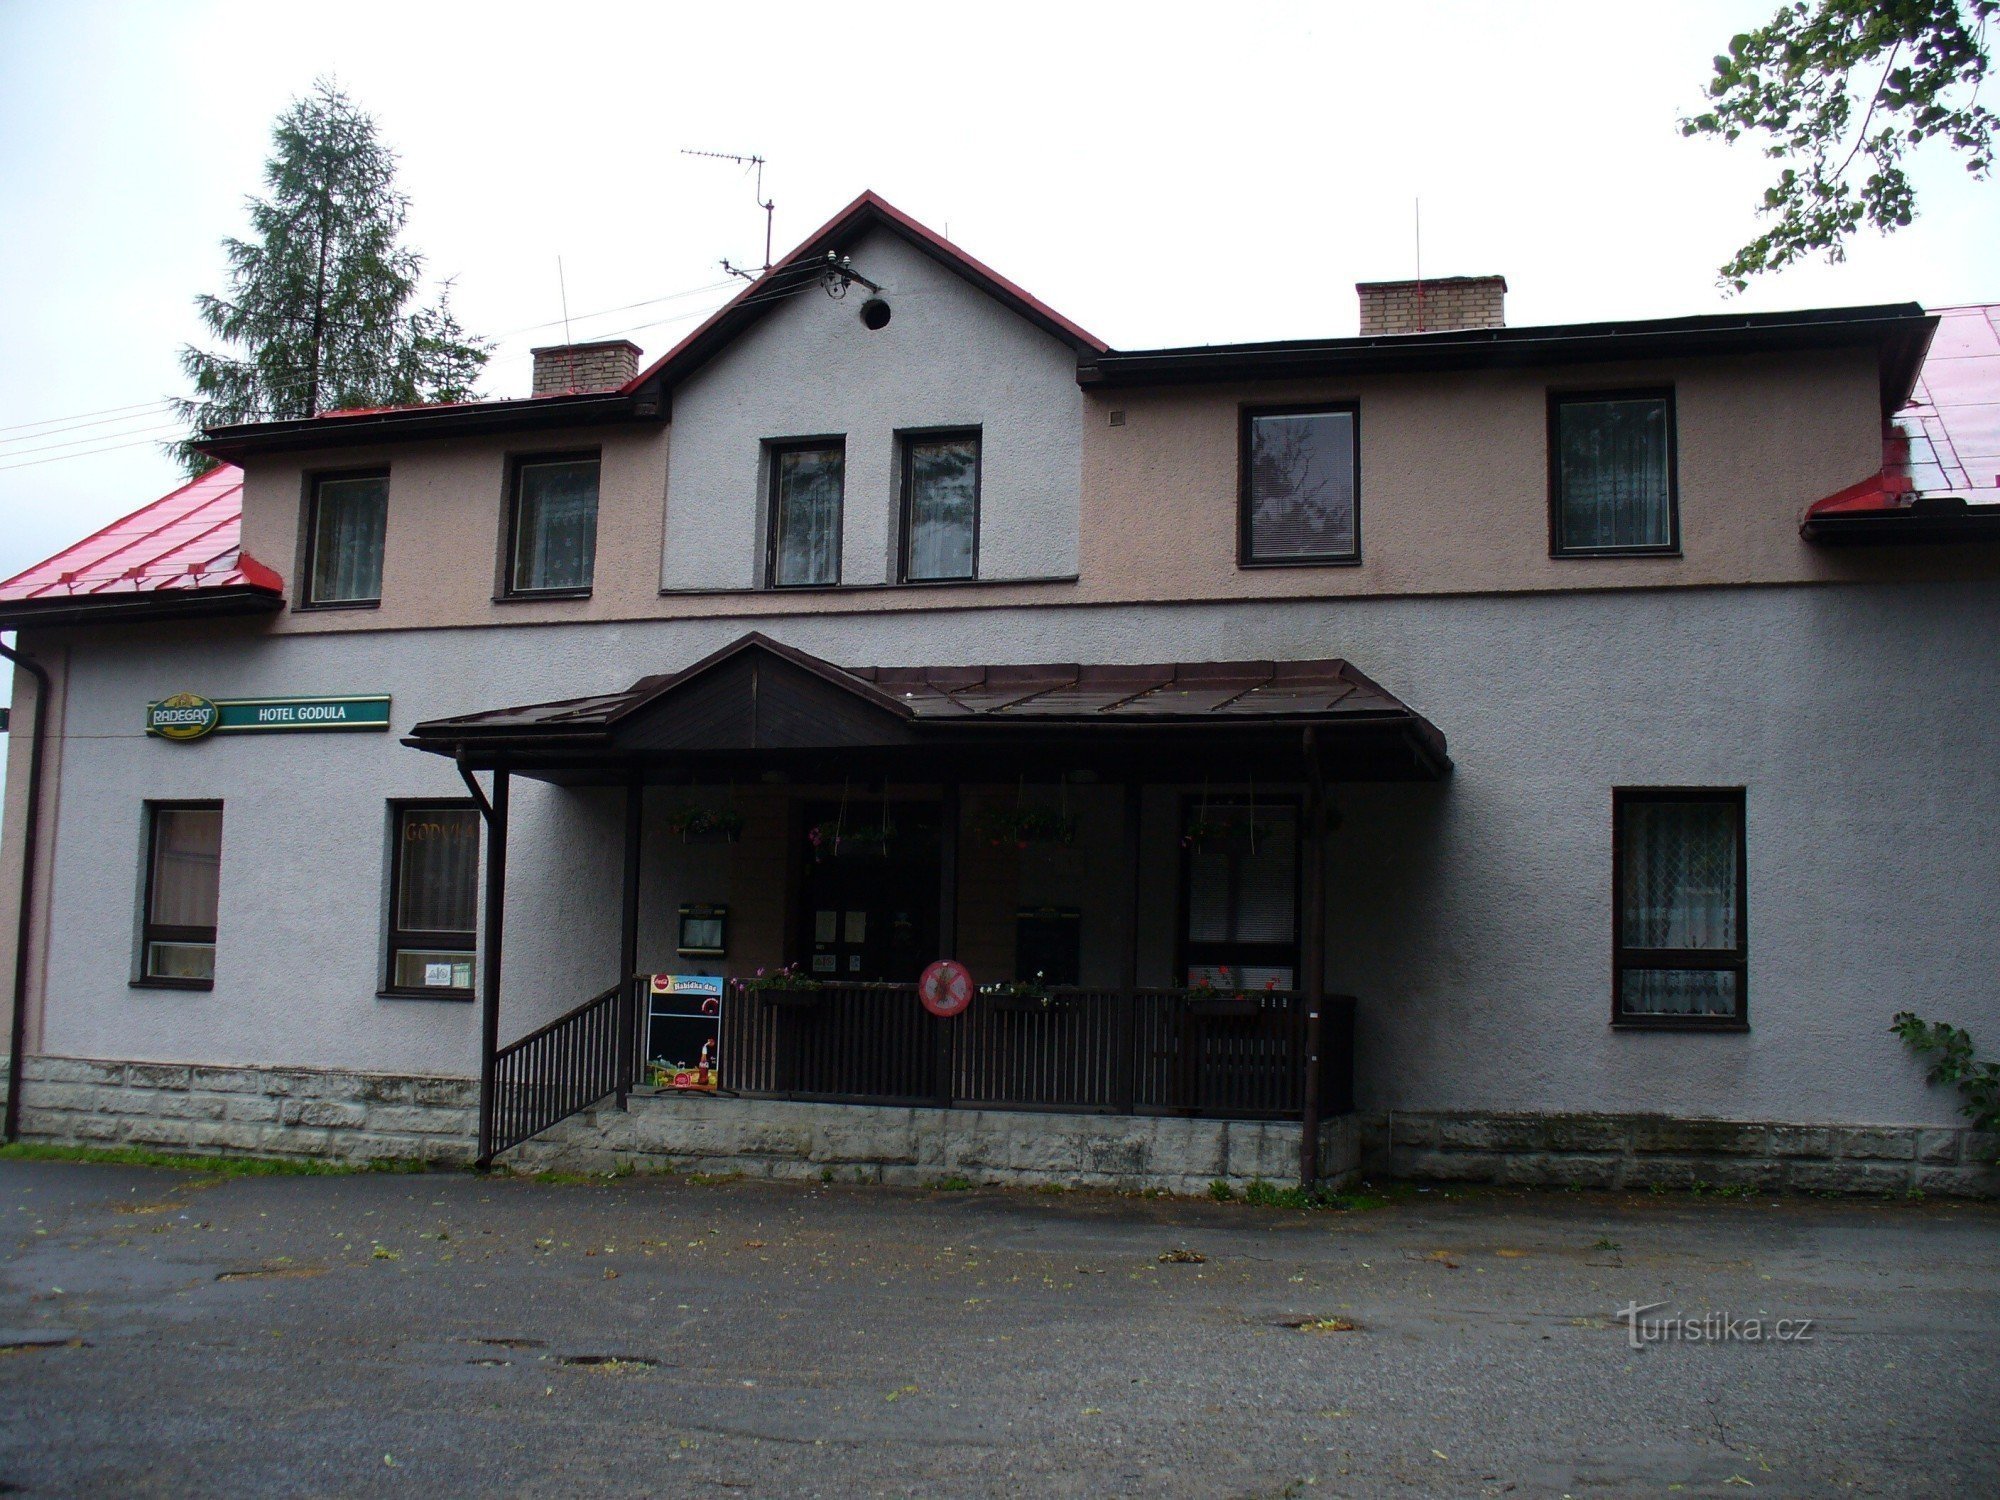 Komorni Lhotka - Hotel Godula